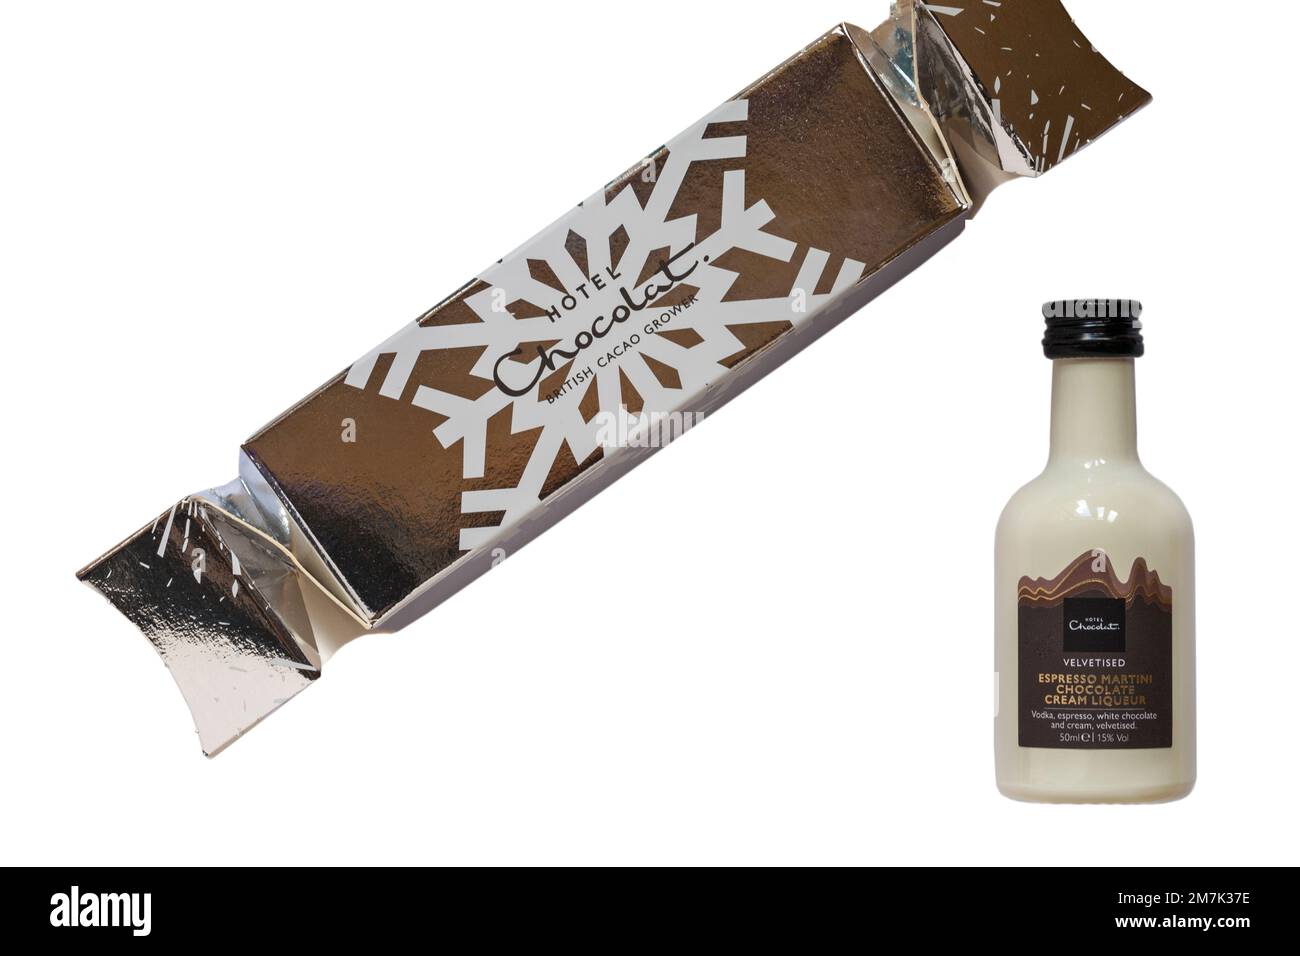 Bottiglia in miniatura di espresso vellutato, liquore alla crema al cioccolato martini dell'Hotel Chocolat Premium Cracker Selection su sfondo bianco Foto Stock